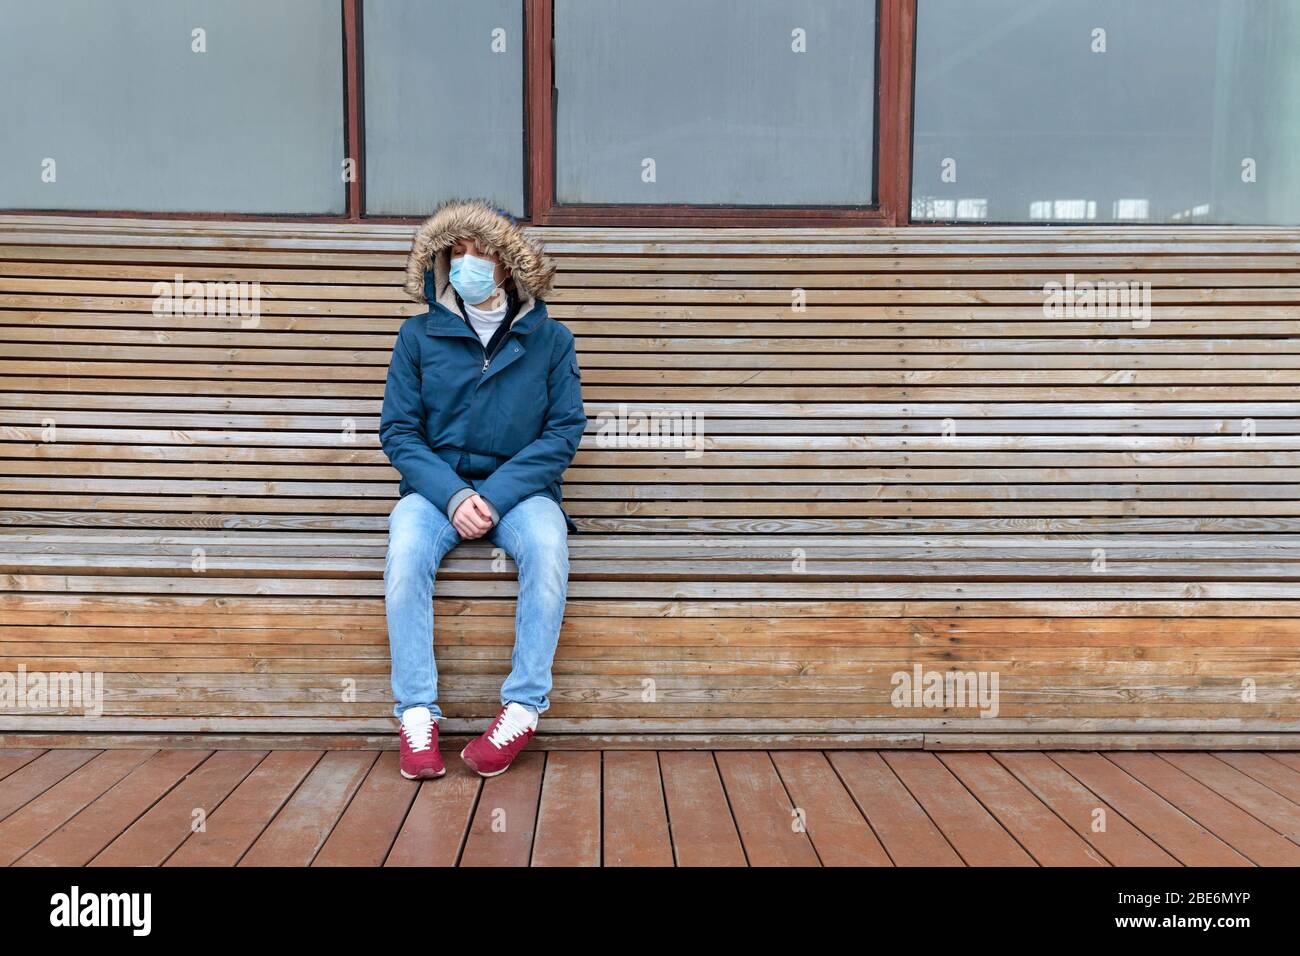 Homme malade avec une cagoule assise seule sur un banc, portant un masque facial contre les maladies infectieuses transmissibles, covid-19. Ville vide des gens en raison de la coro Banque D'Images